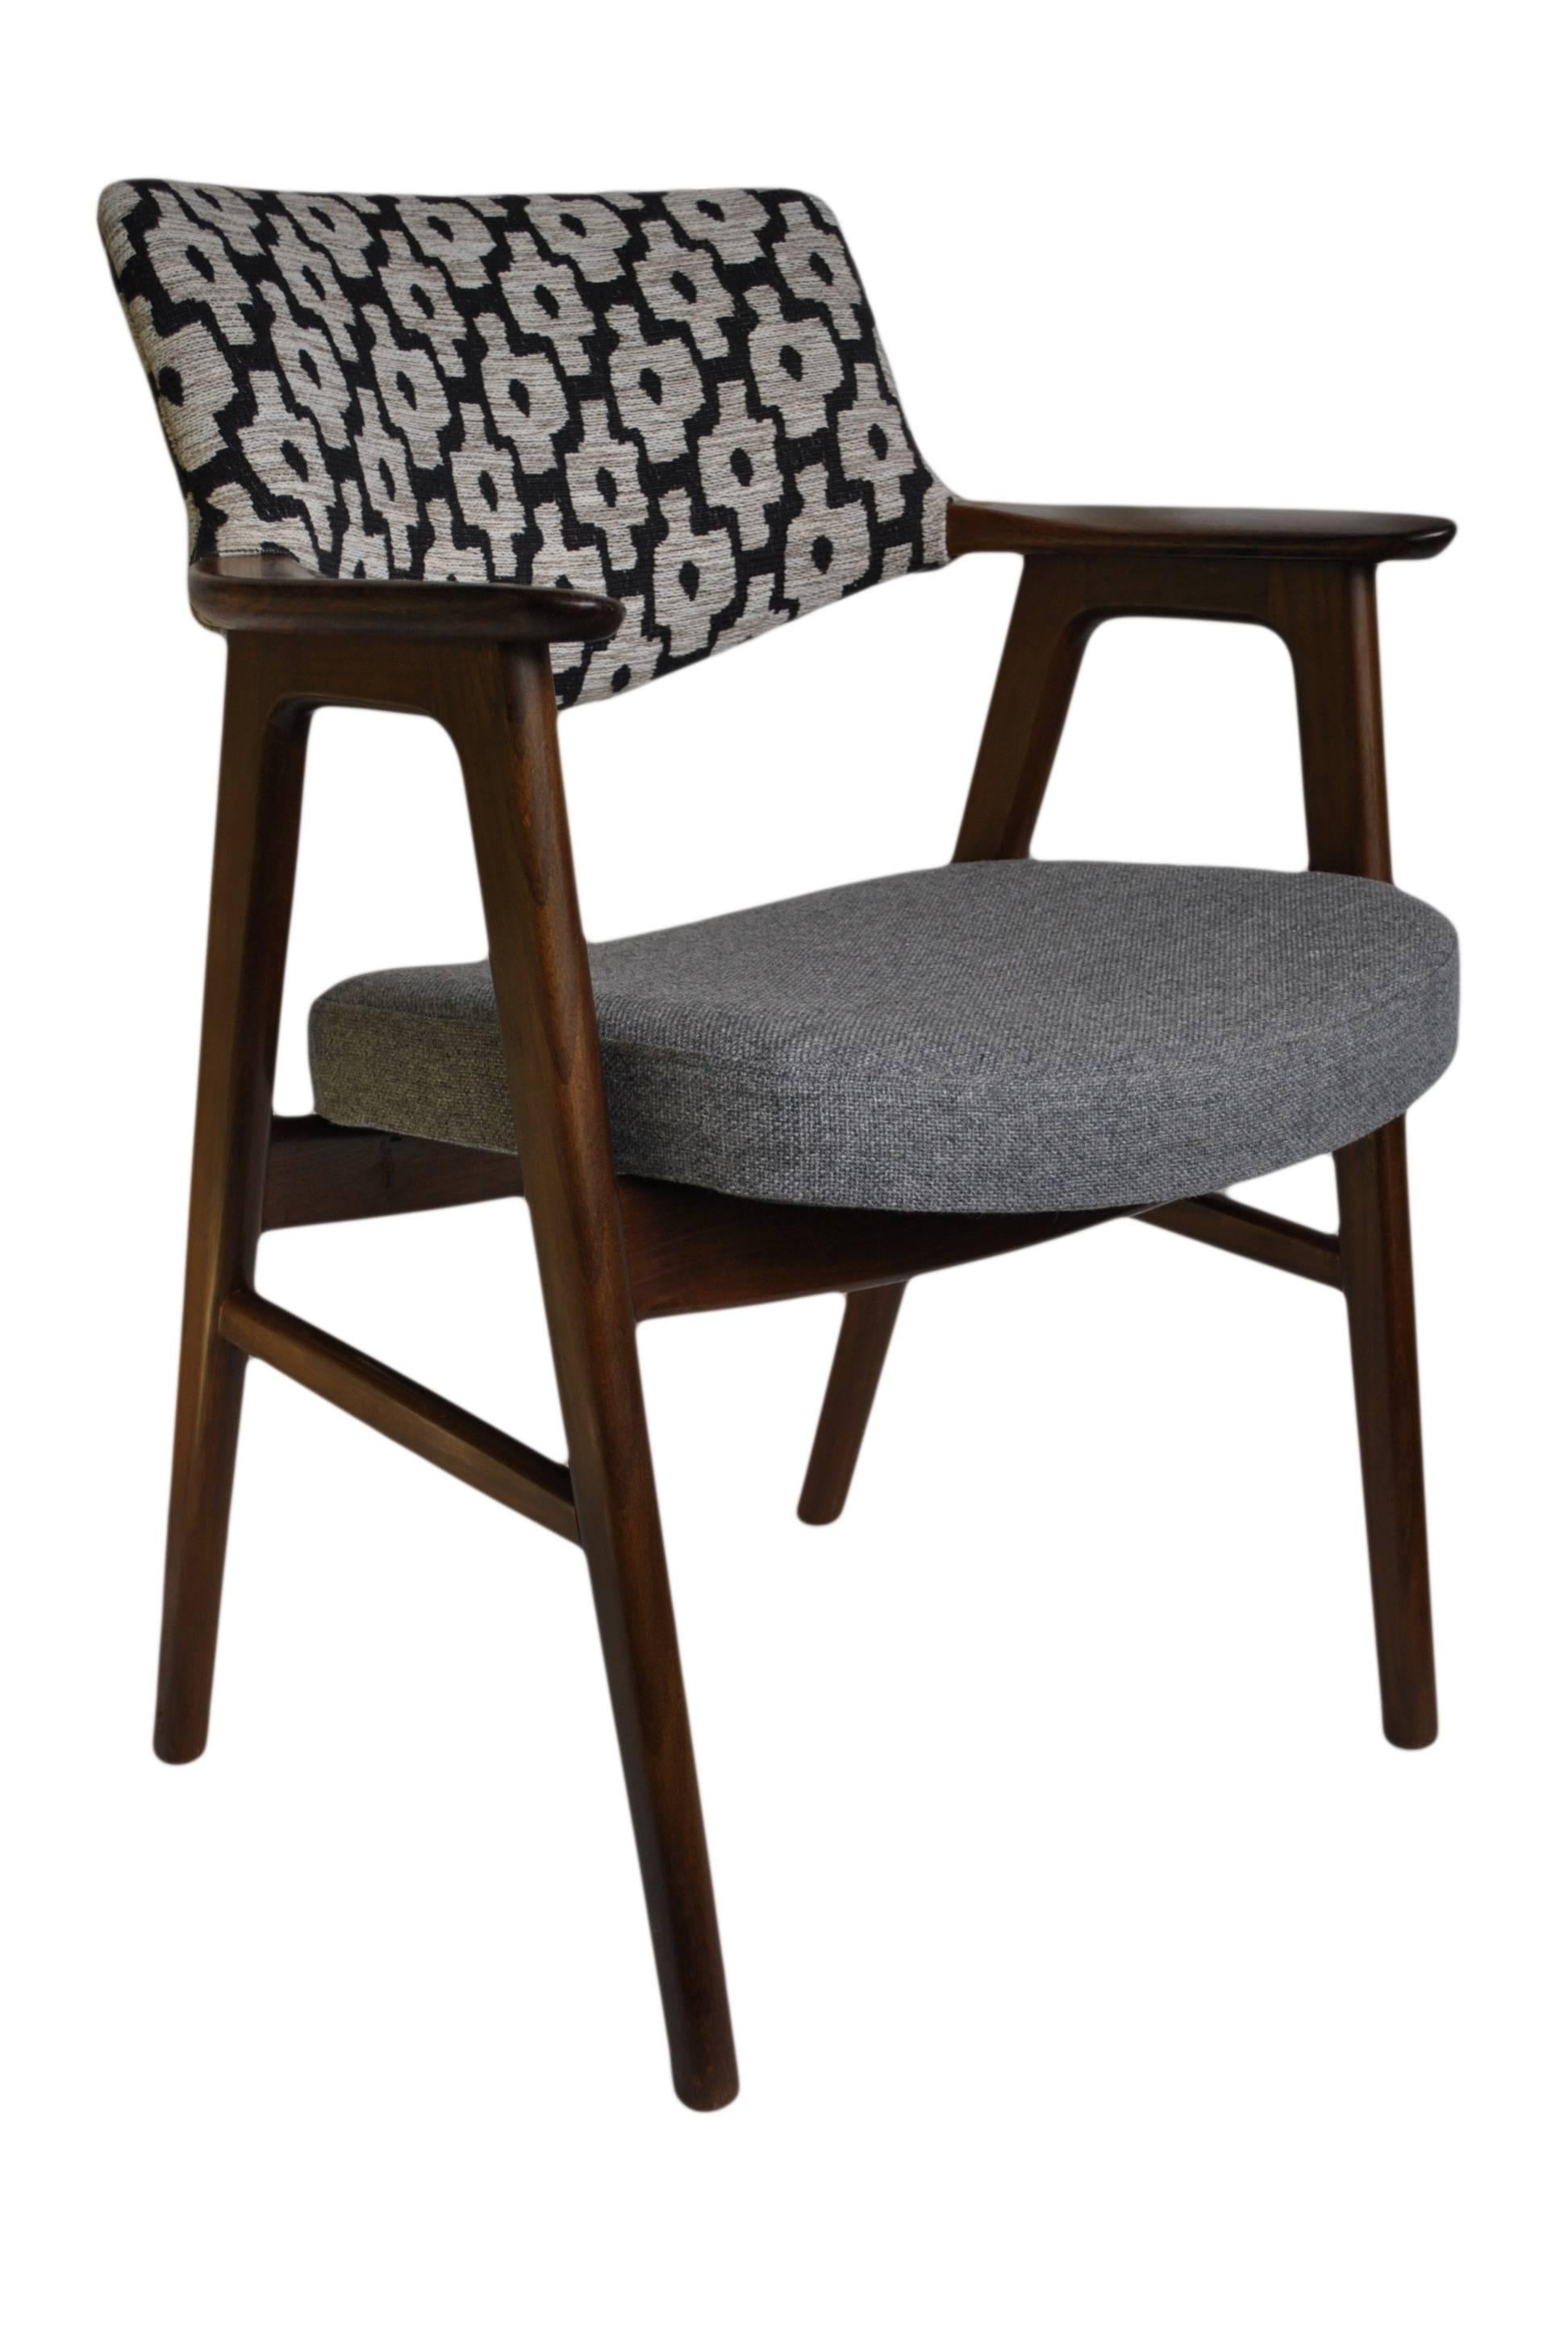 Erik Kirkegaard Chair, Refurbished and reupholstered. 2